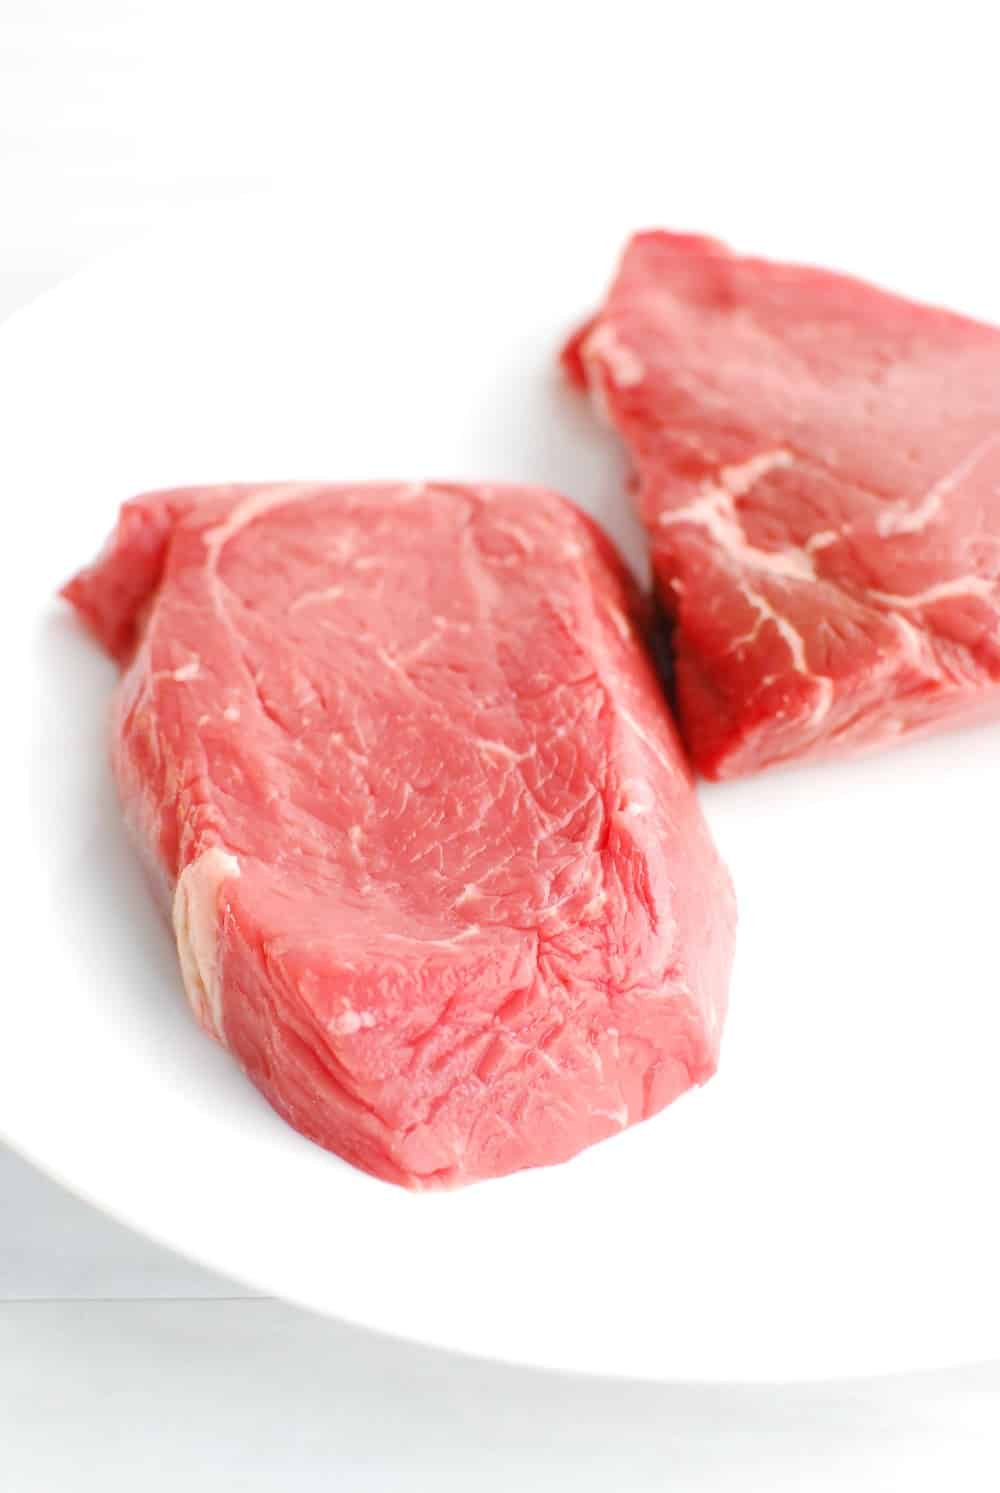 Top sirloin steak on a plate